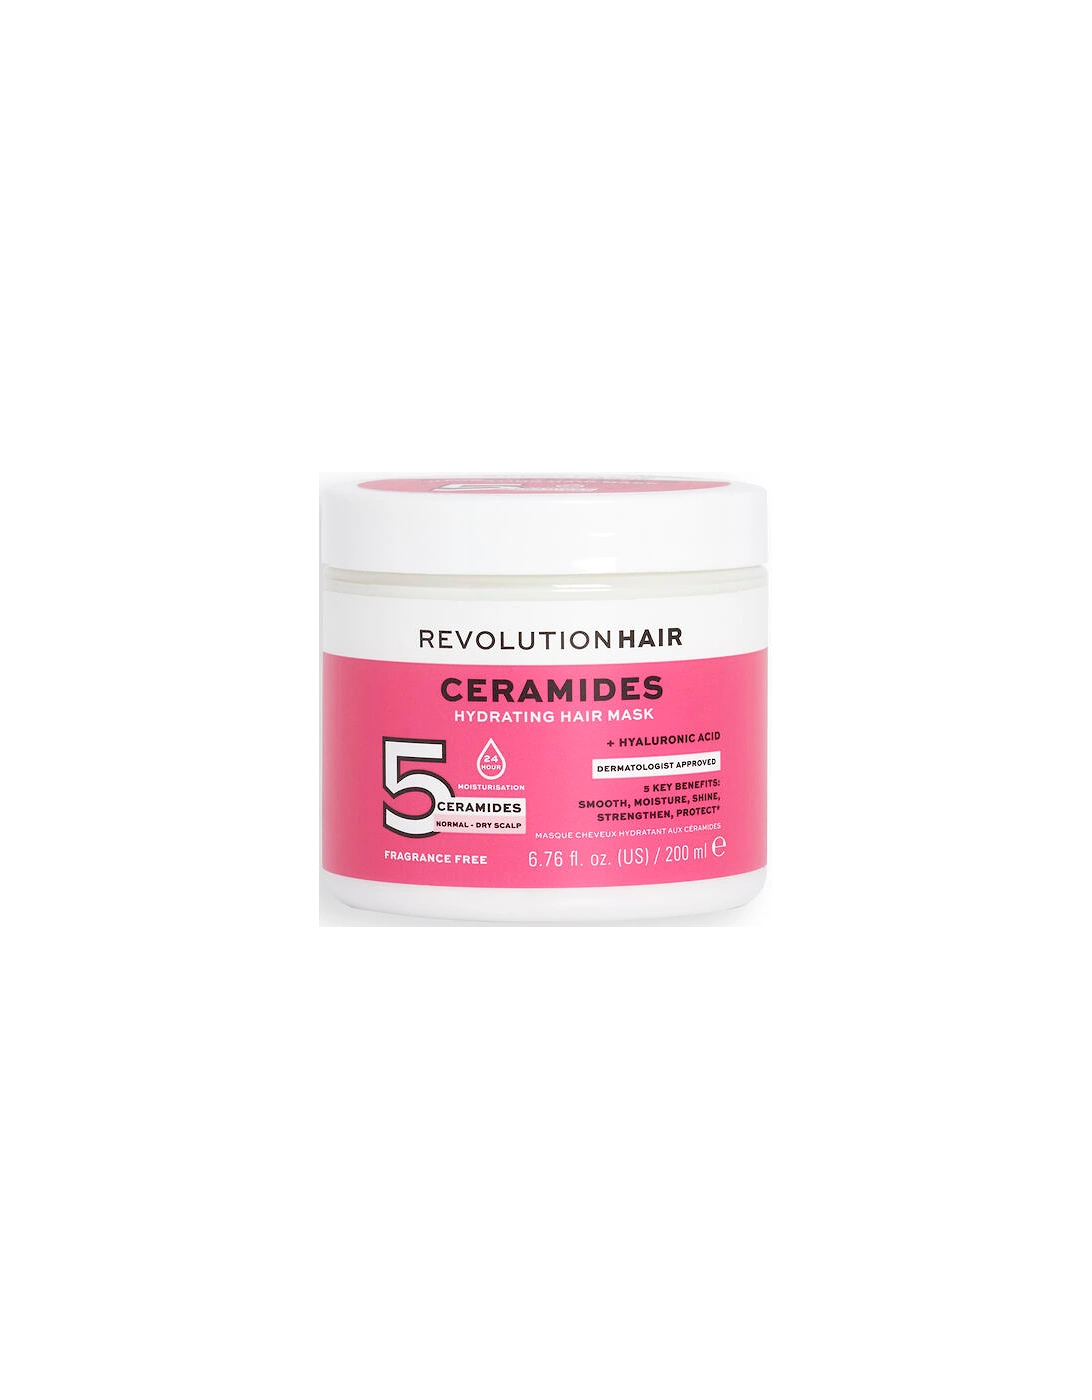 Haircare 5 Ceramides + Hyaluronic Acid Moisture Lock Hair Mask, 2 of 1